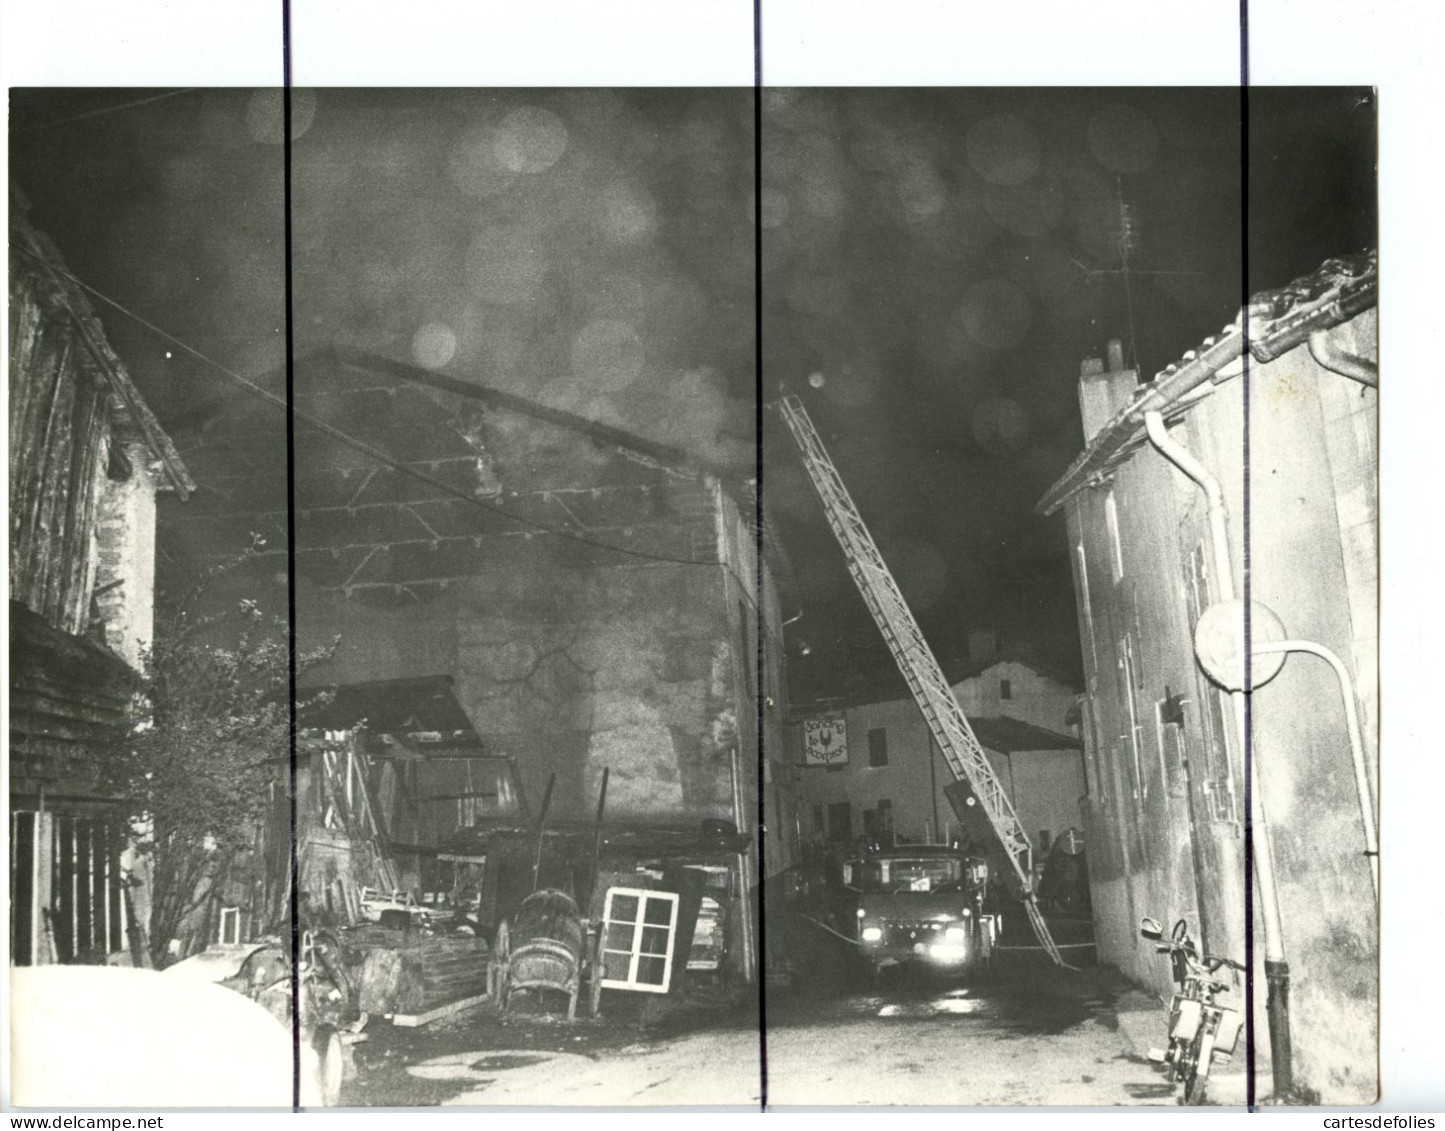 22 PHOTOGRAPHIES. Rhône. SOURCIEUX les MINES. Incendie discothèque dancing LE SCORPION en 1977 rue sarrazin . Pompiers